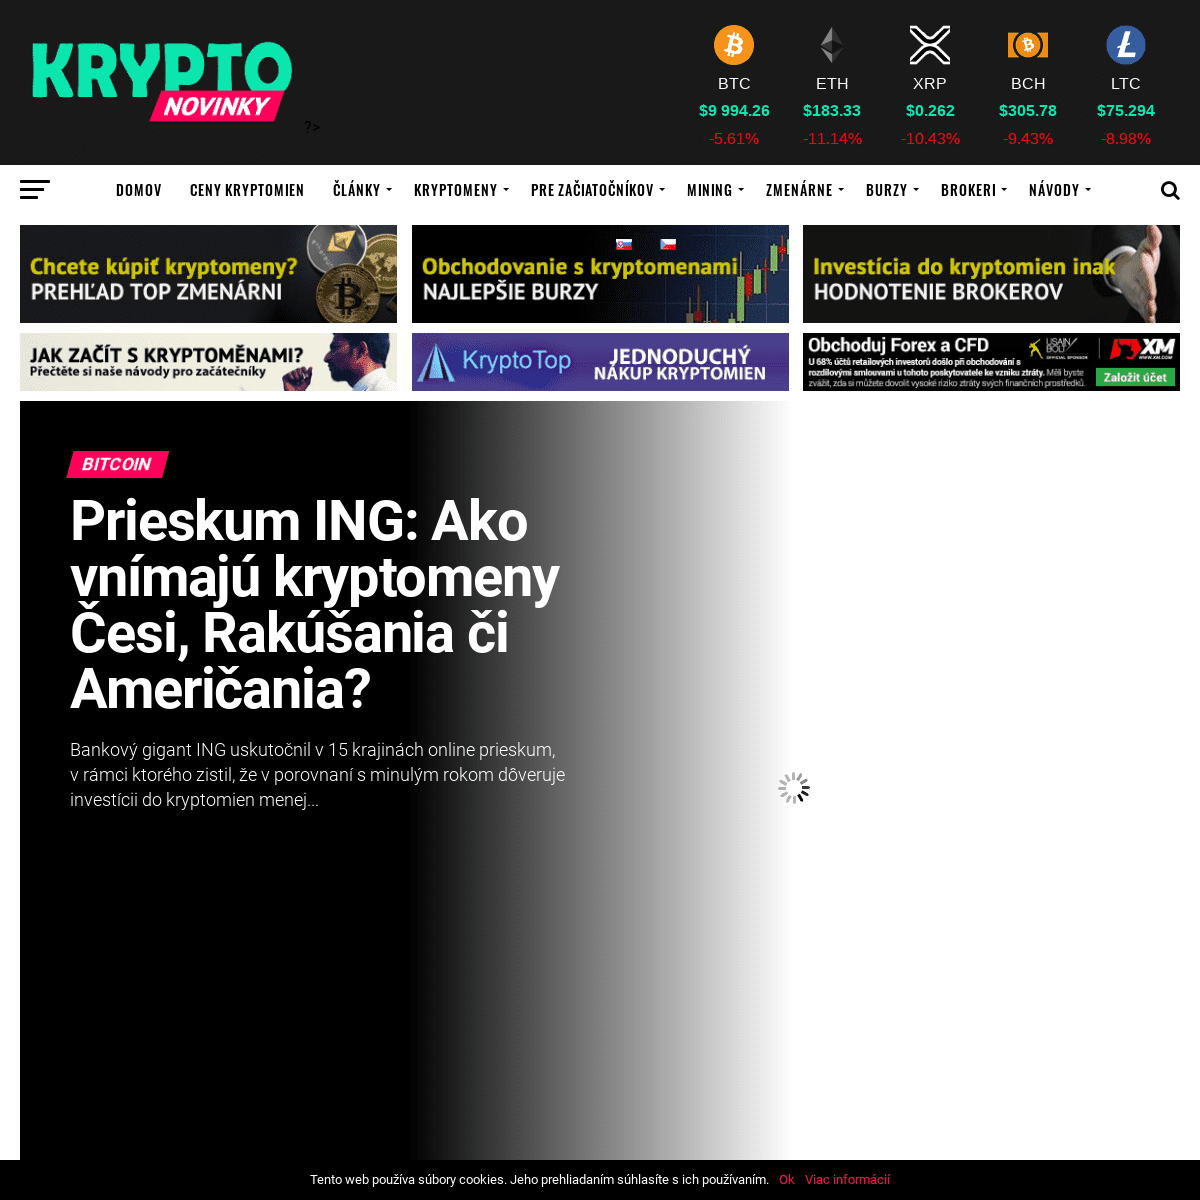 Kryptomeny, Bitcoin & altcoin správy, návody, recenzie | Kryptonovinky.sk